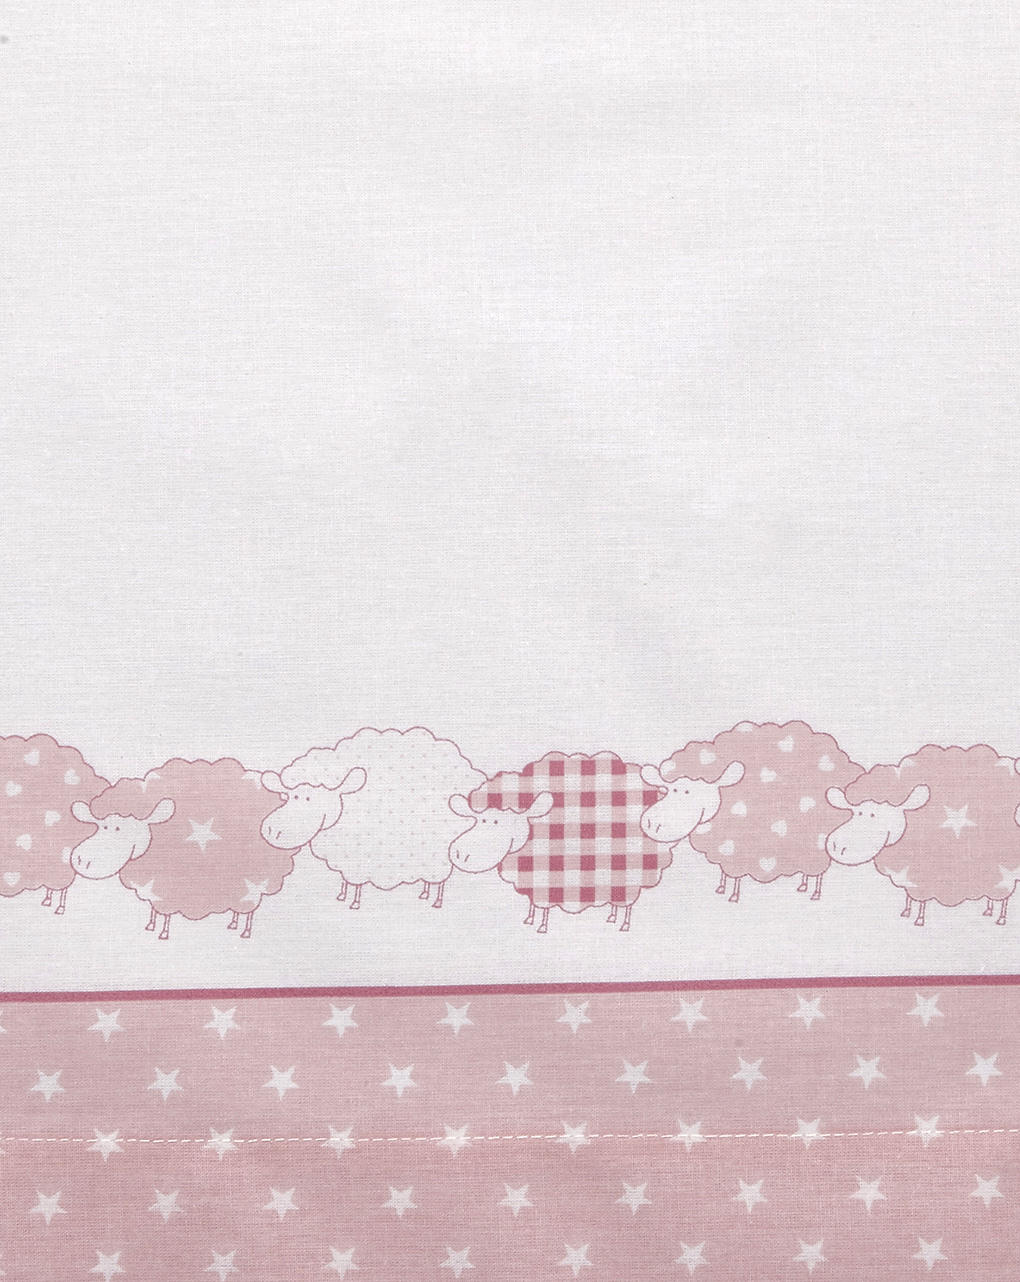 Completo para cama com ovelhas rosa e estrelas - Prénatal